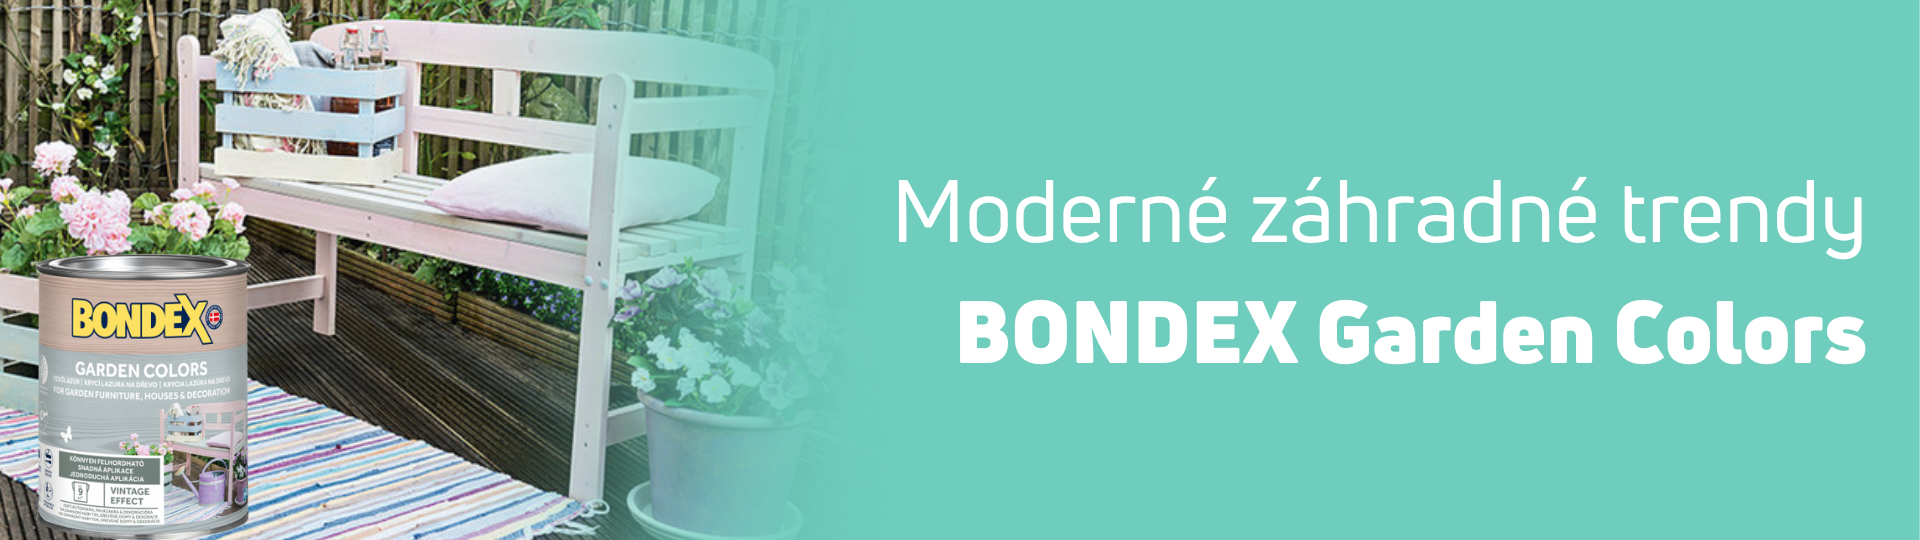 bondex-garden-banner